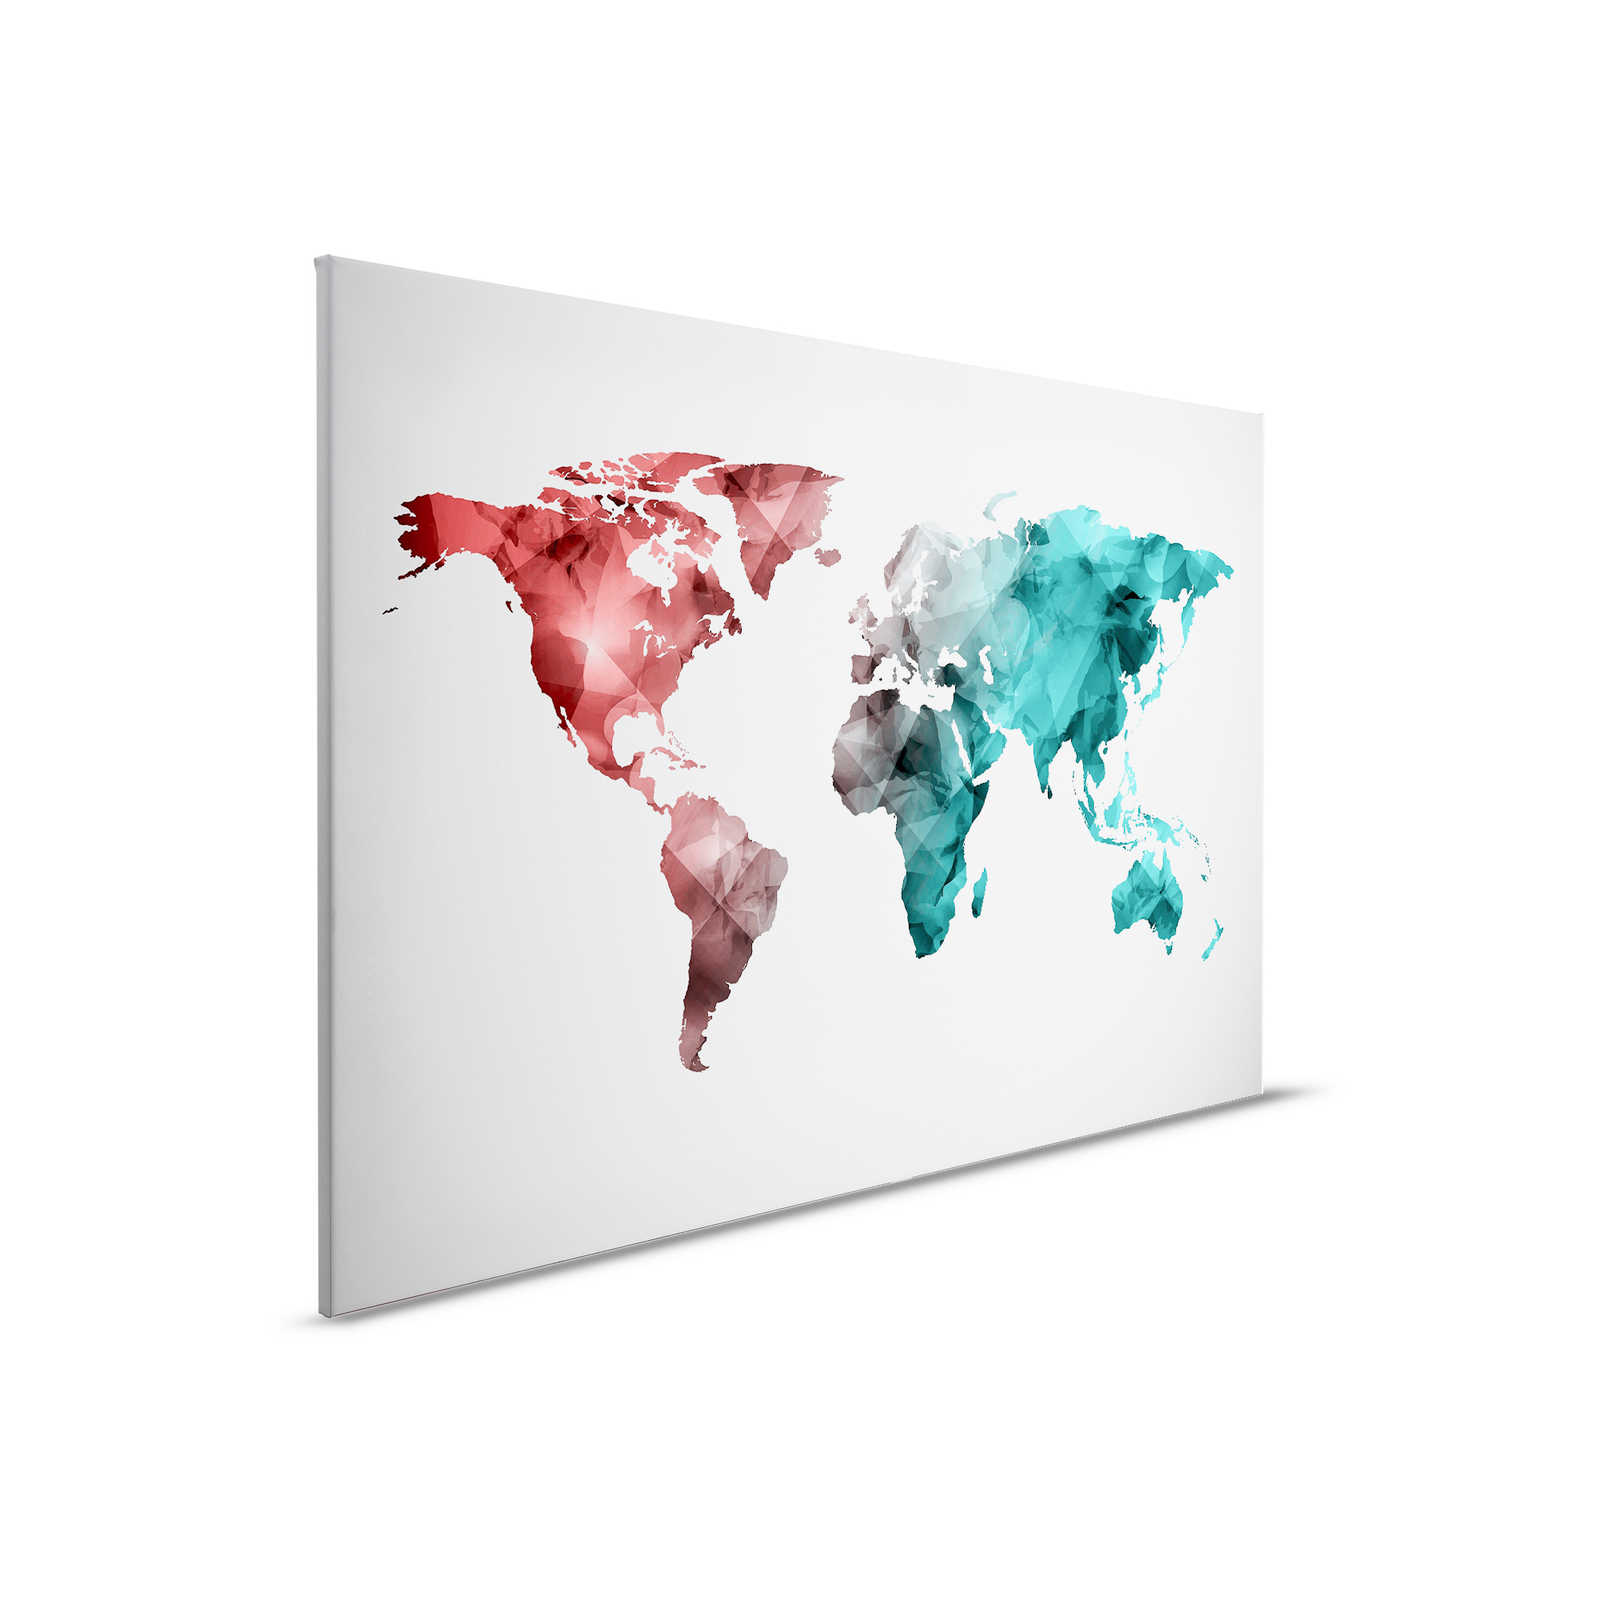 Toile avec carte du monde composée d'éléments graphiques | WorldGrafic 2 - 0,90 m x 0,60 m
